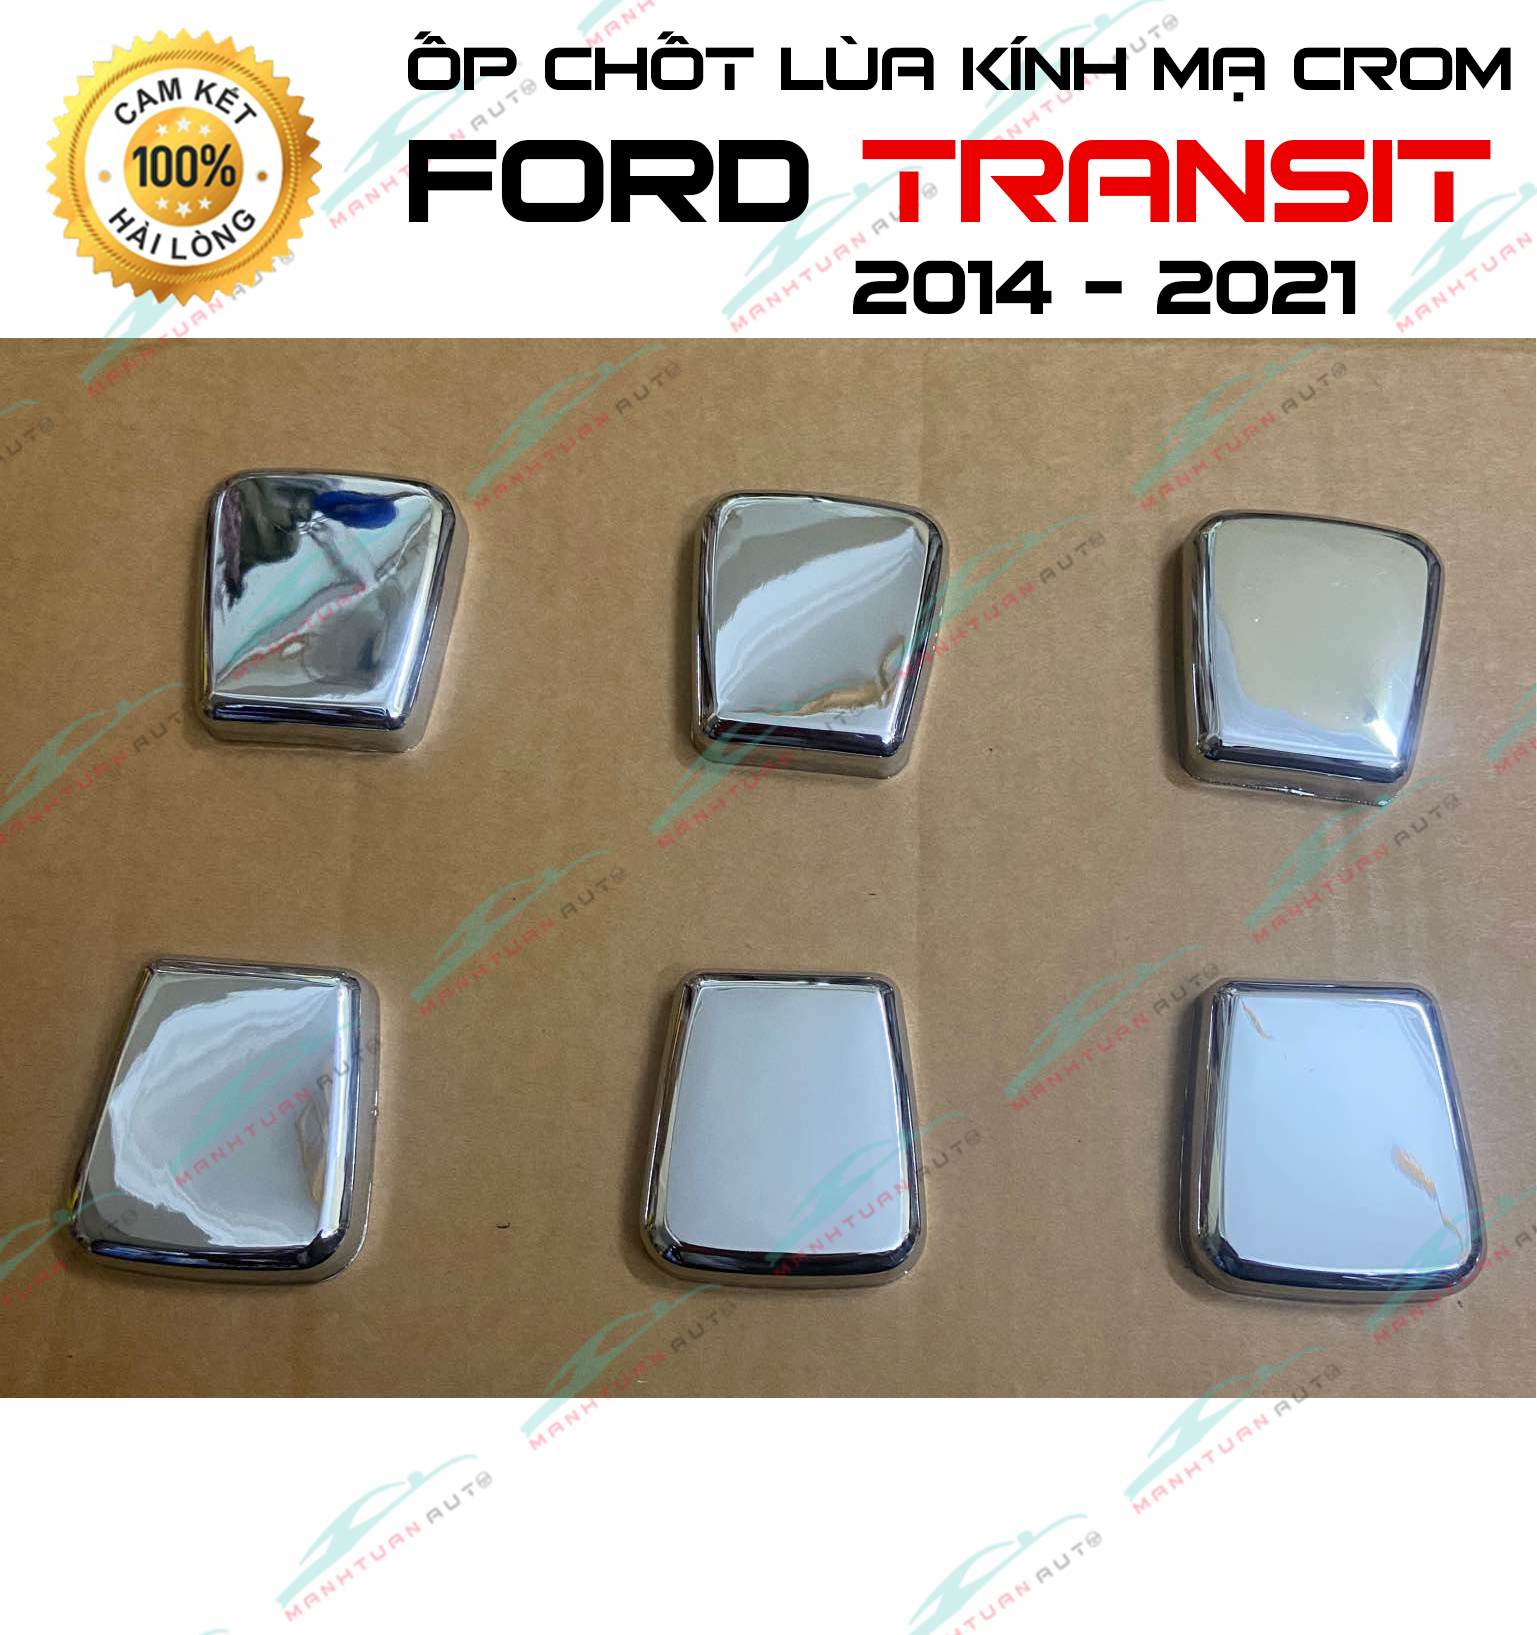 Ốp mạ chốt kính Ford Transit (1 bộ 6 cái) mạ crom hàng cao cấp